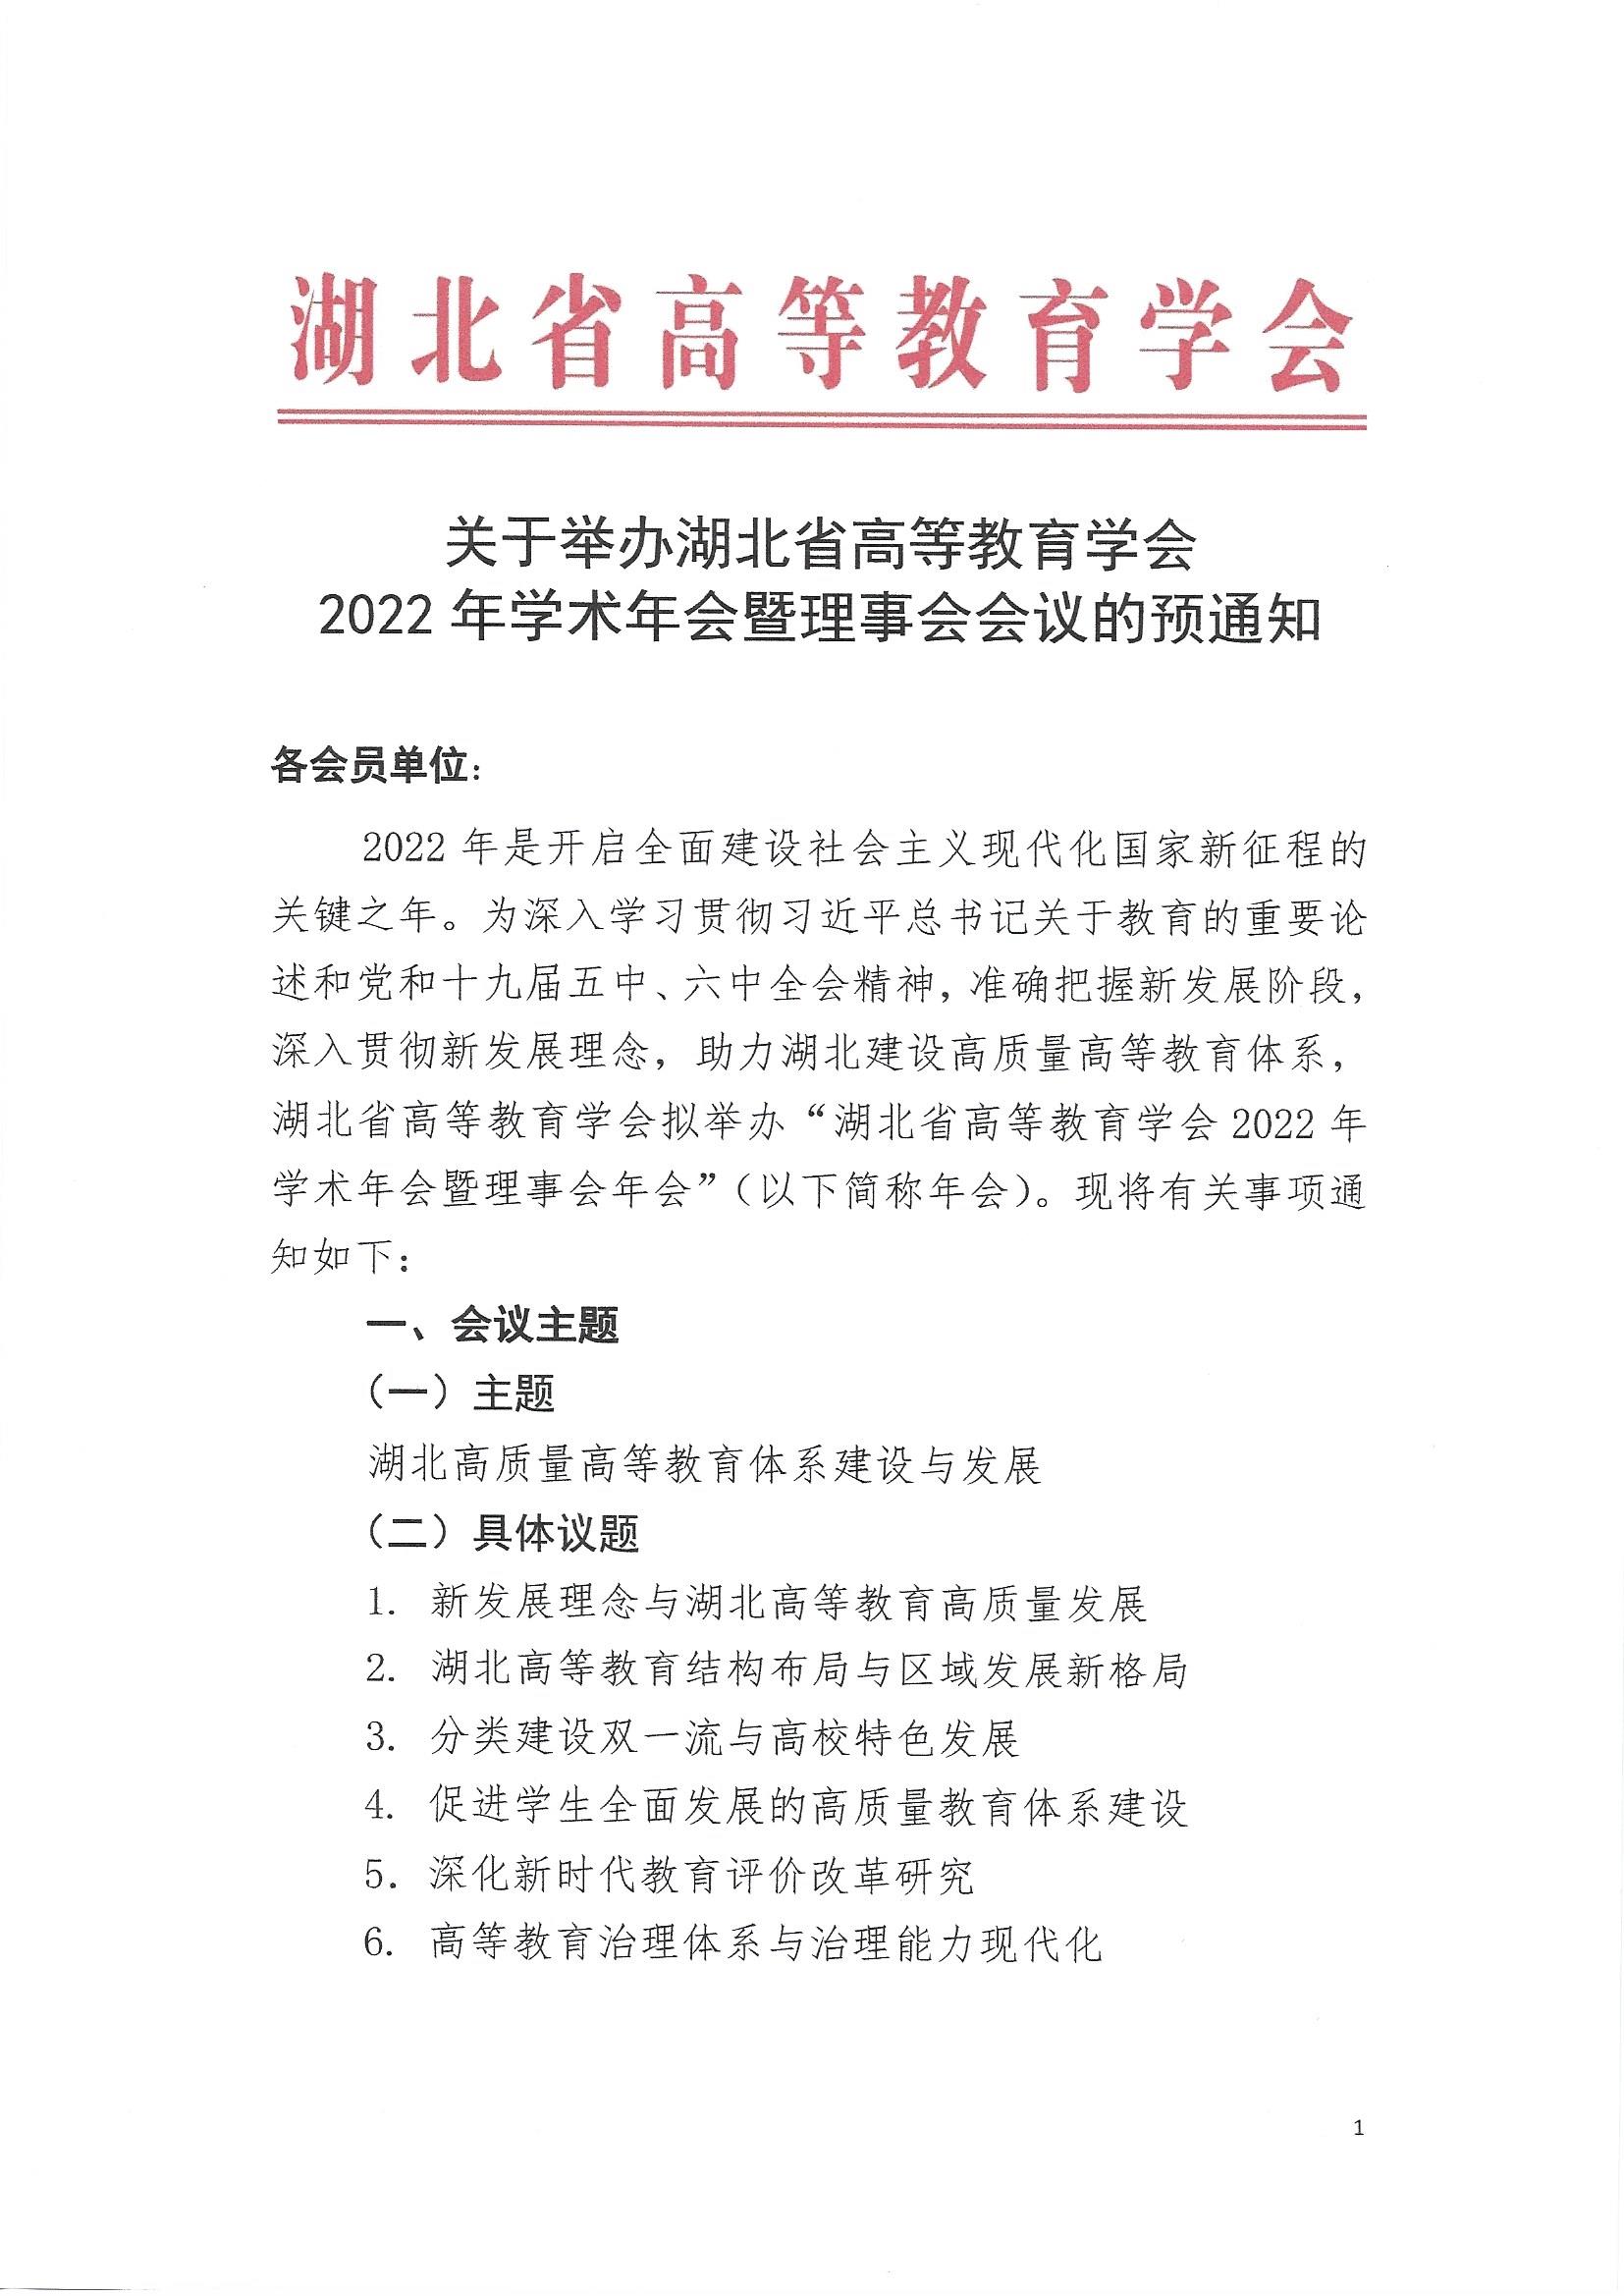 关于举办湖北省高等教育学会2022年学术年会暨理事会会议的预通知_页面_1.jpg